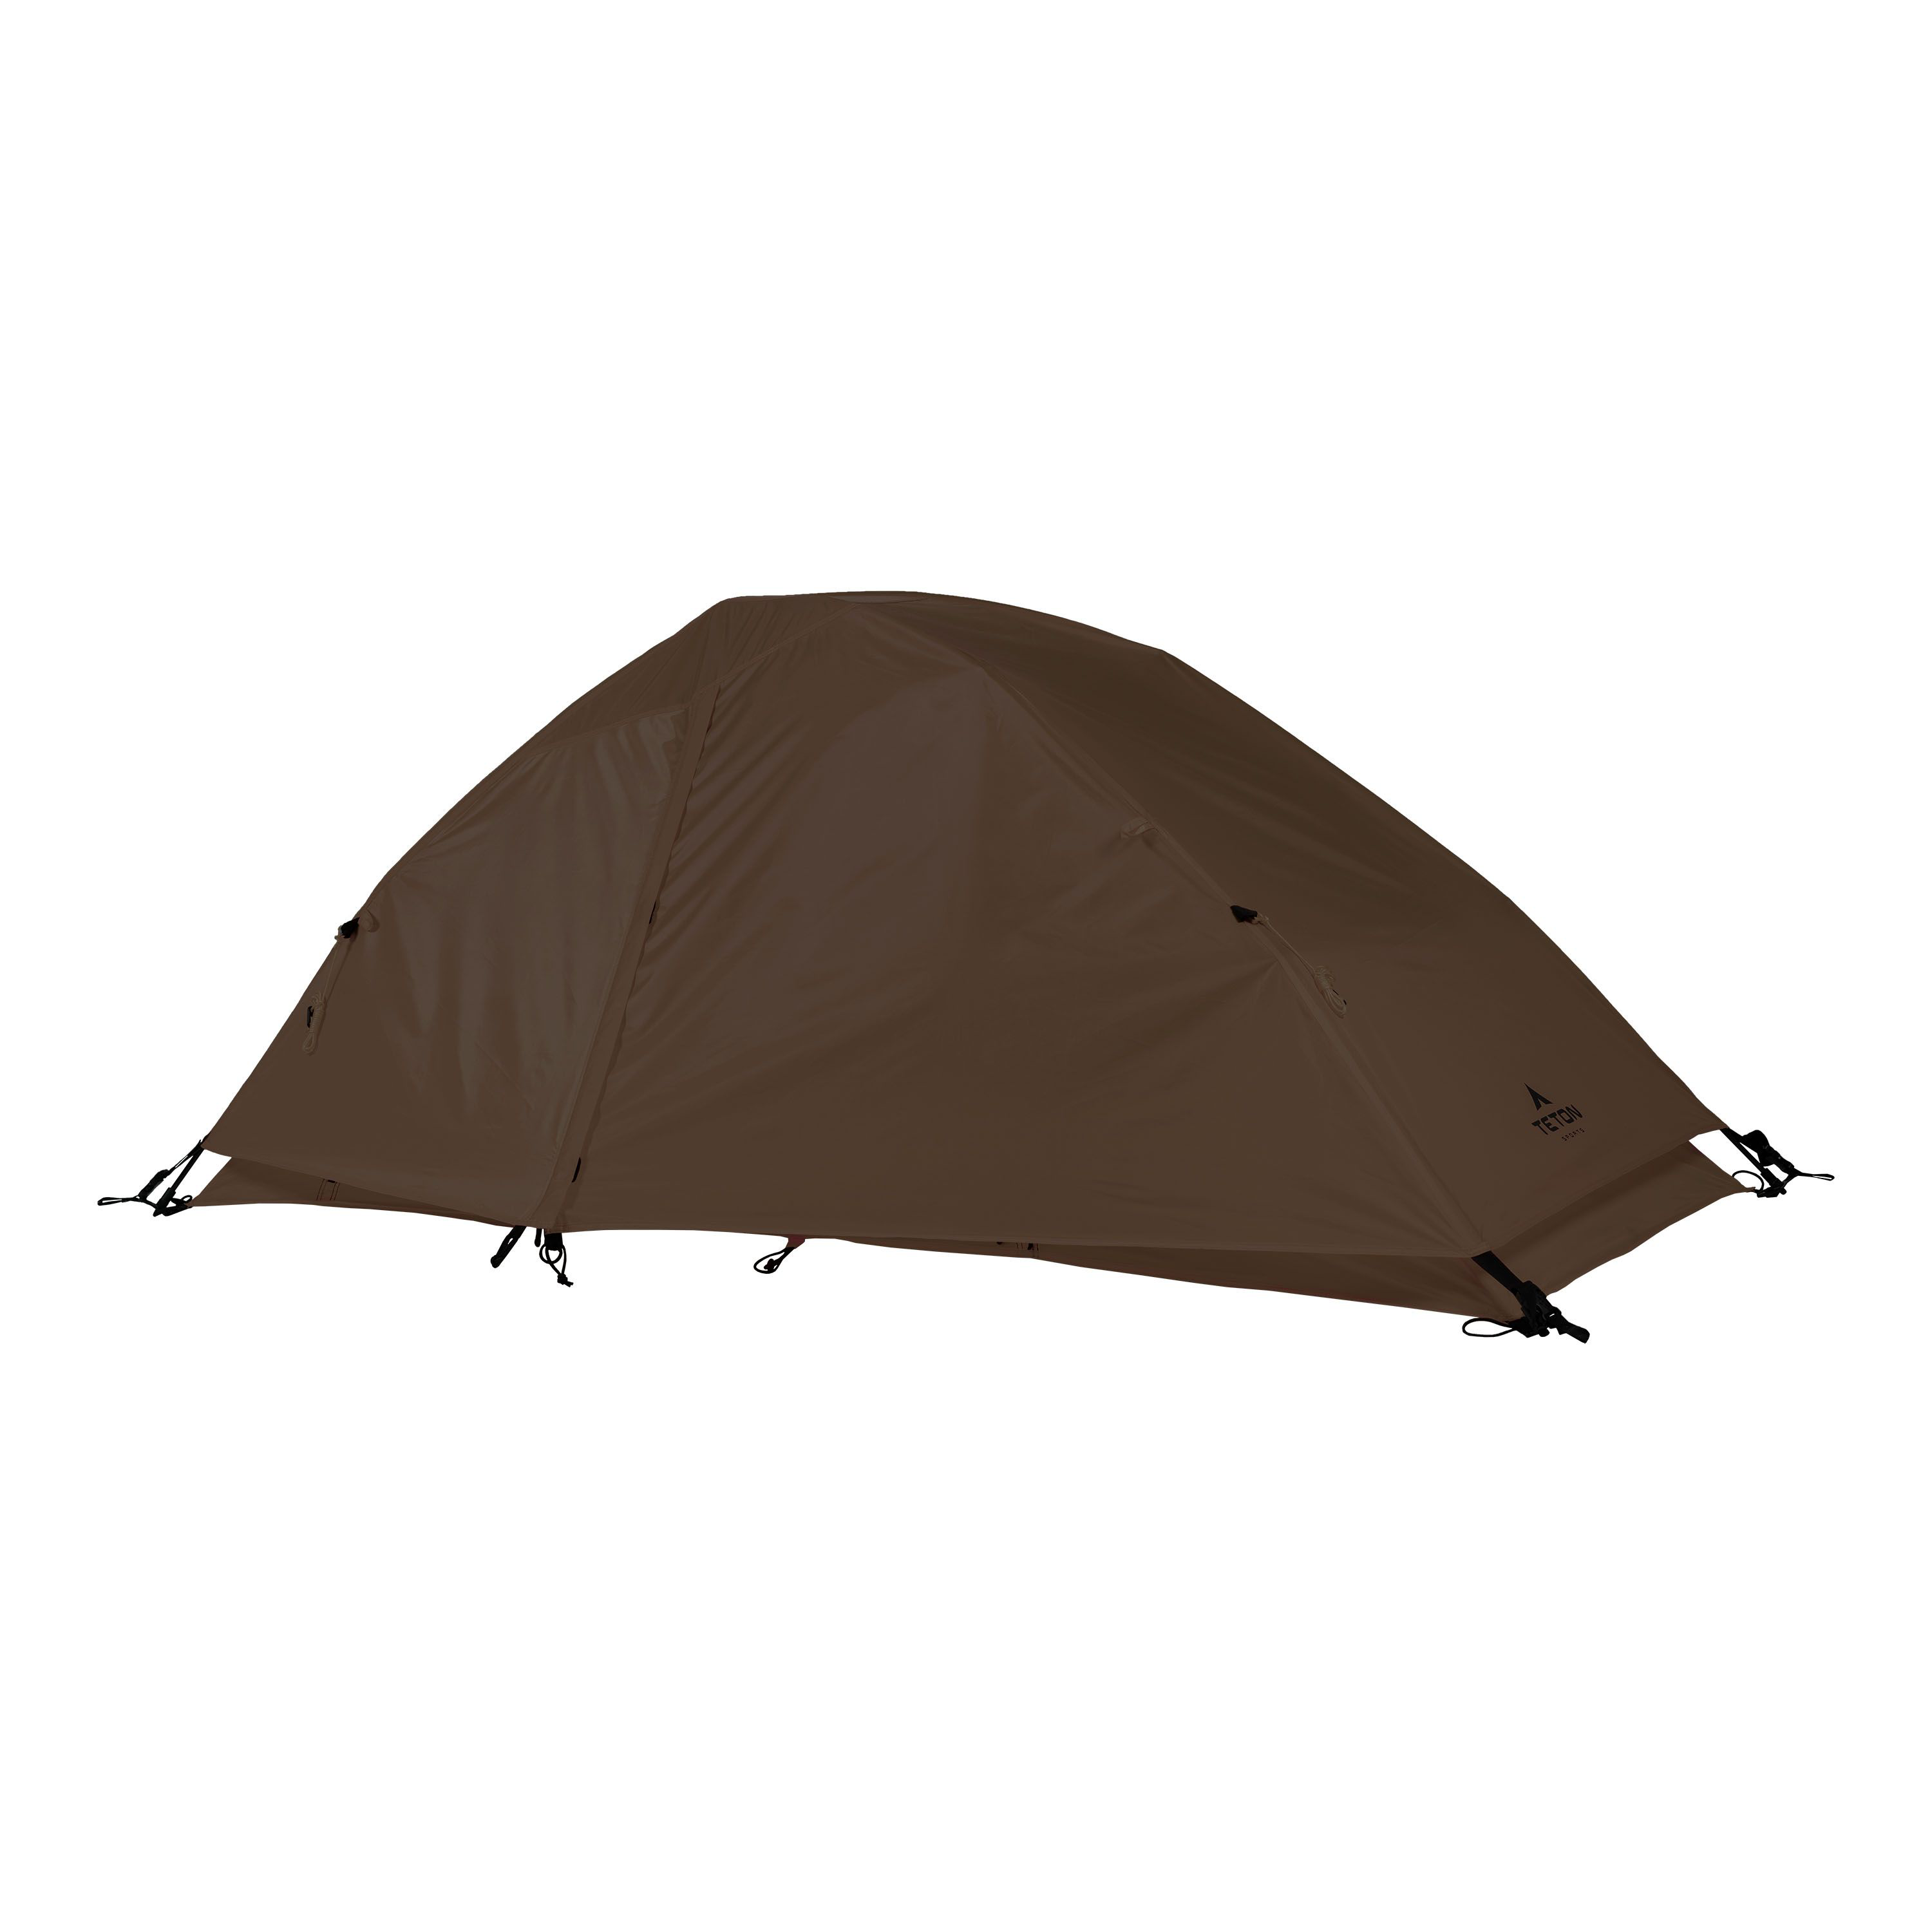 TETON Sports Vista 1 Single-Person Quick Dome Tent - Brown